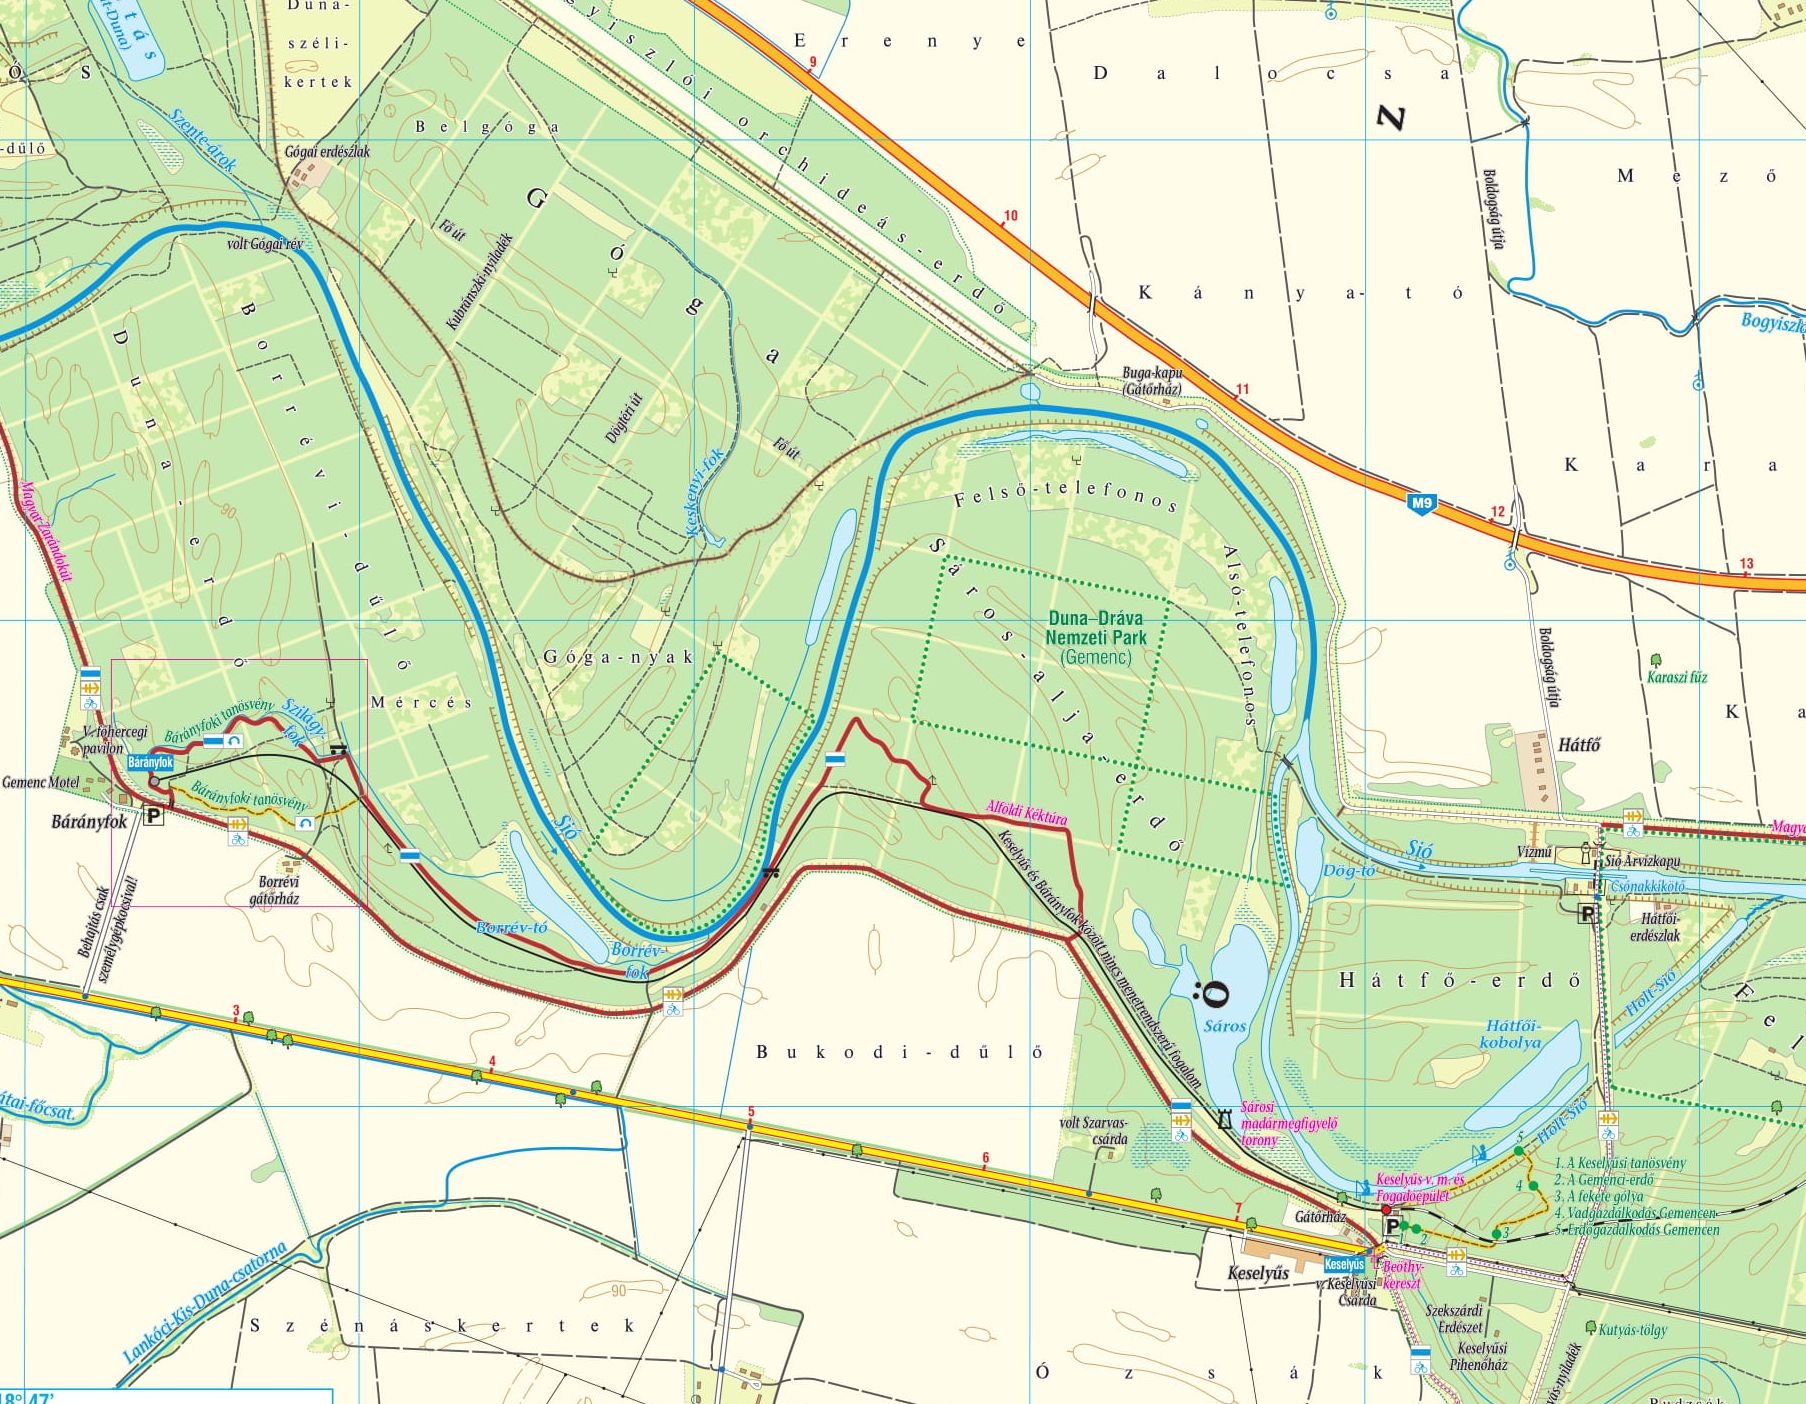 Szekszárd/Gemenc sample map: Bárányfok